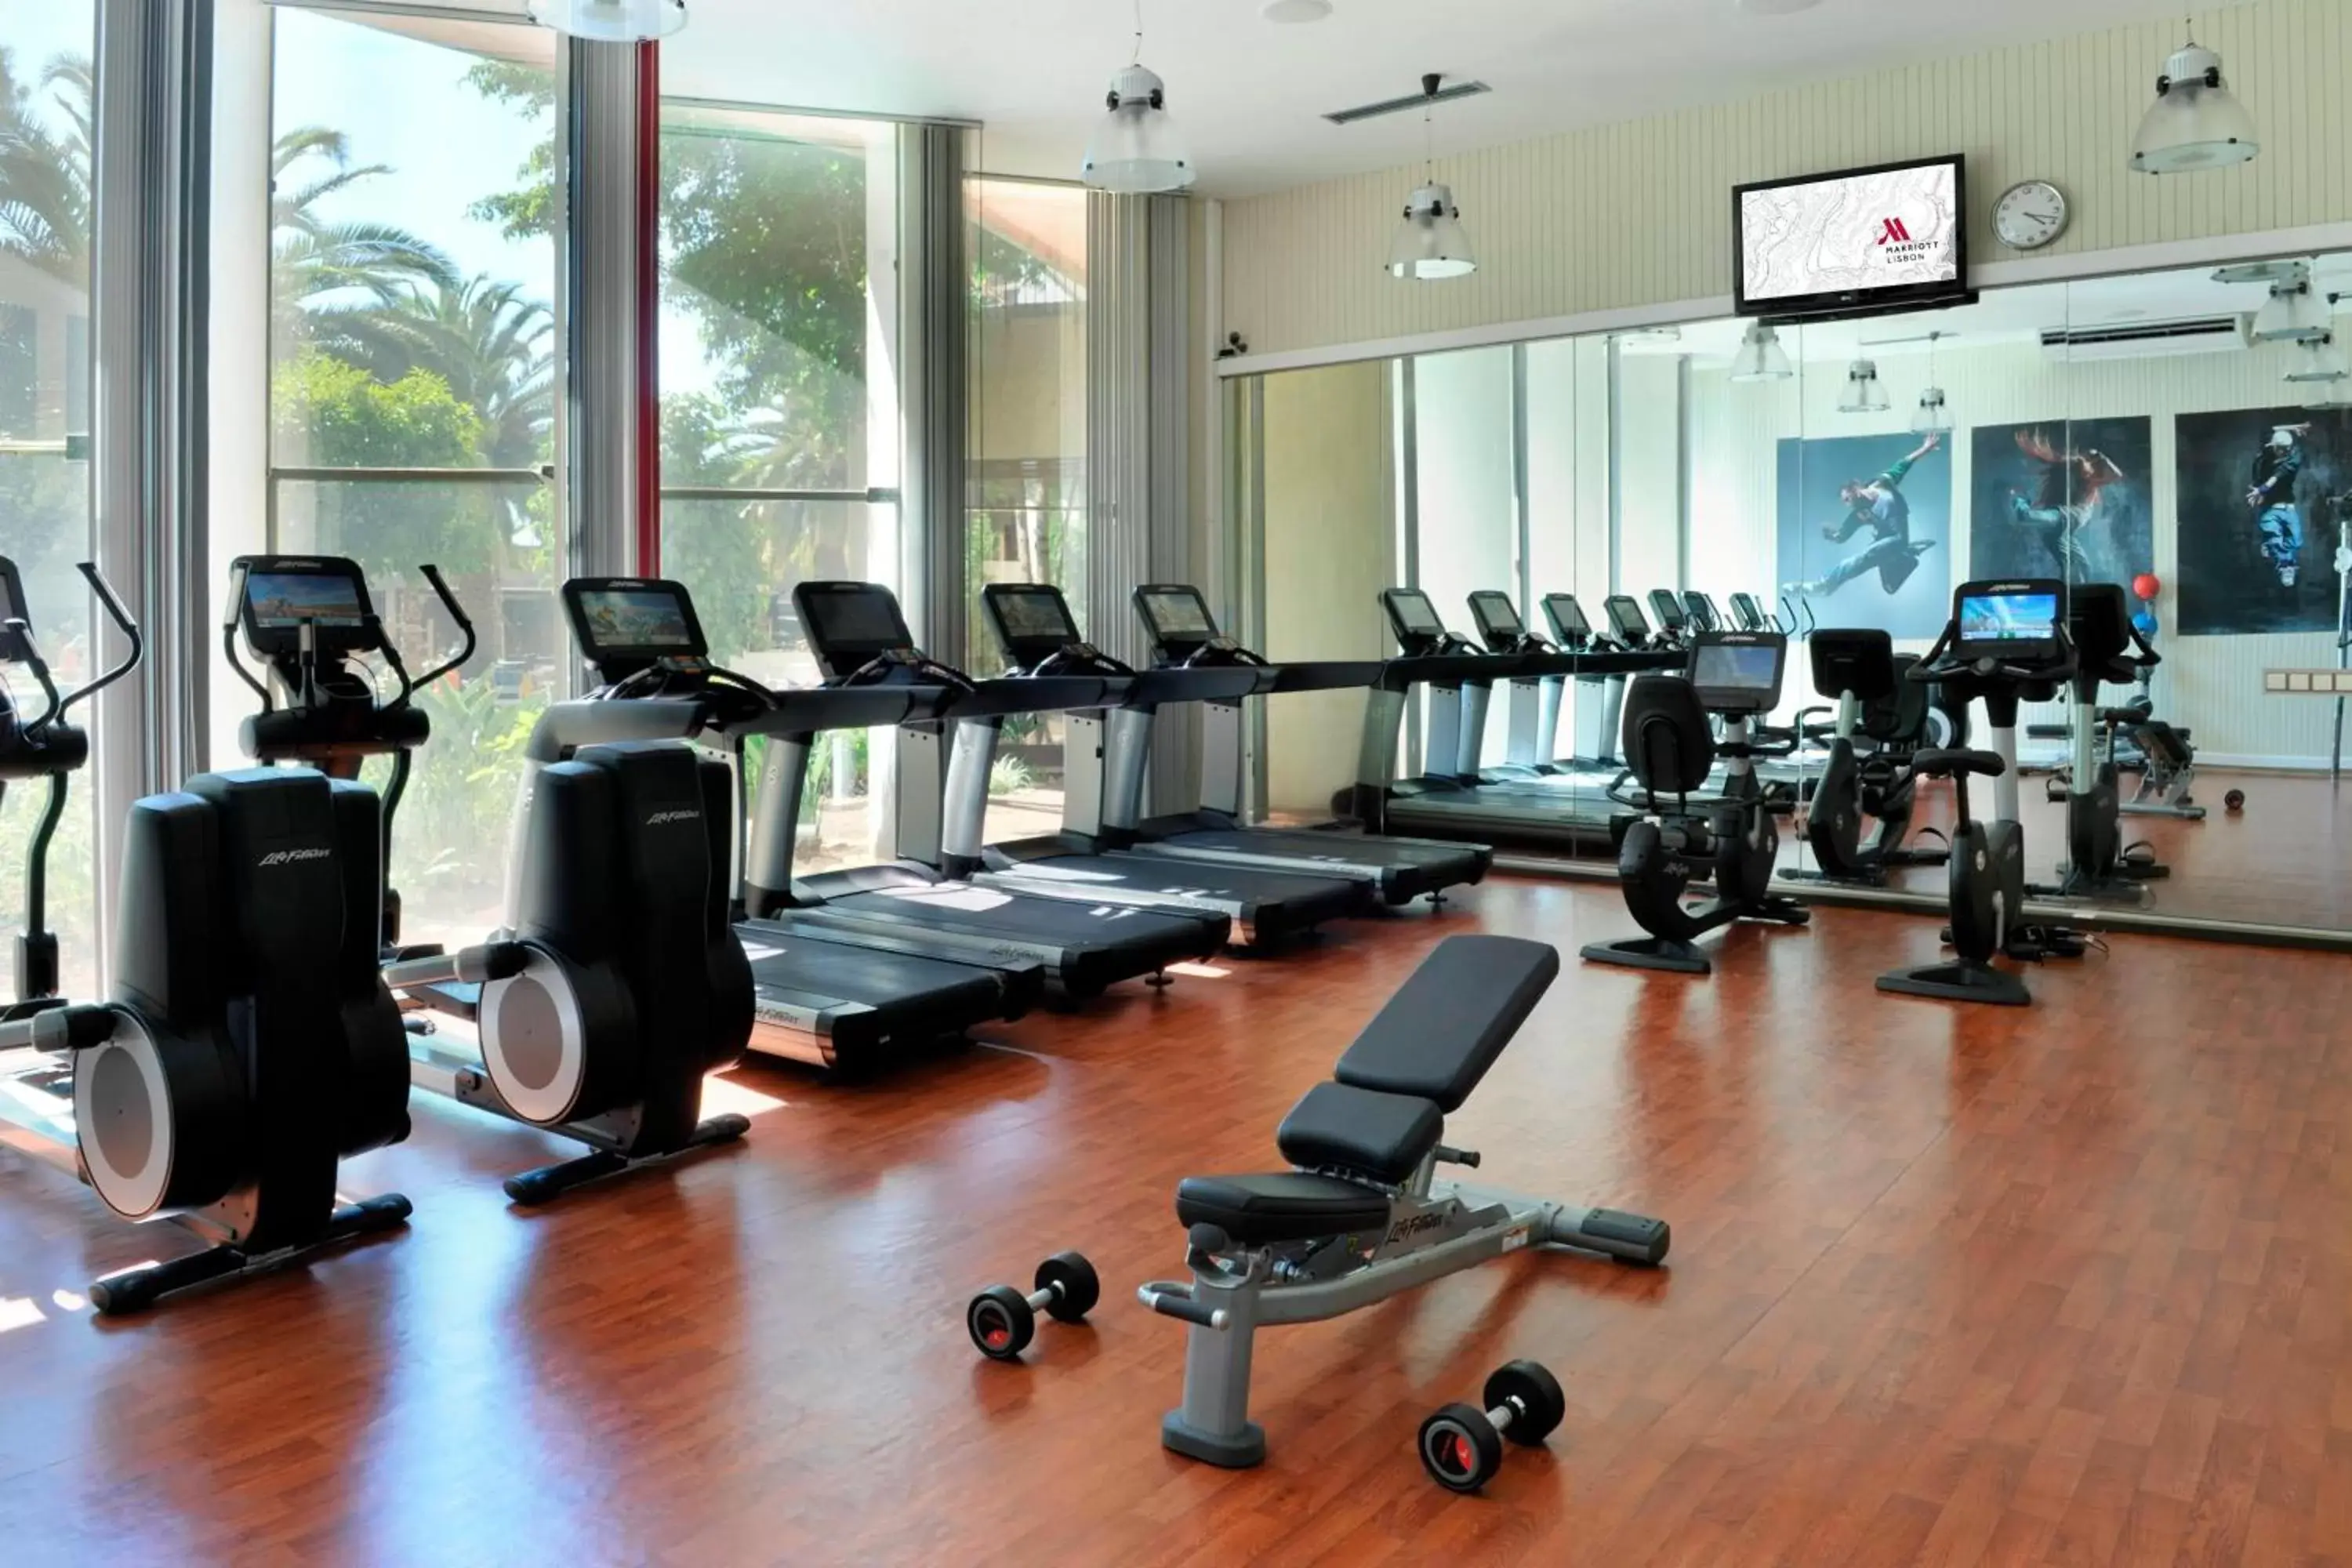 Fitness centre/facilities, Fitness Center/Facilities in Lisbon Marriott Hotel